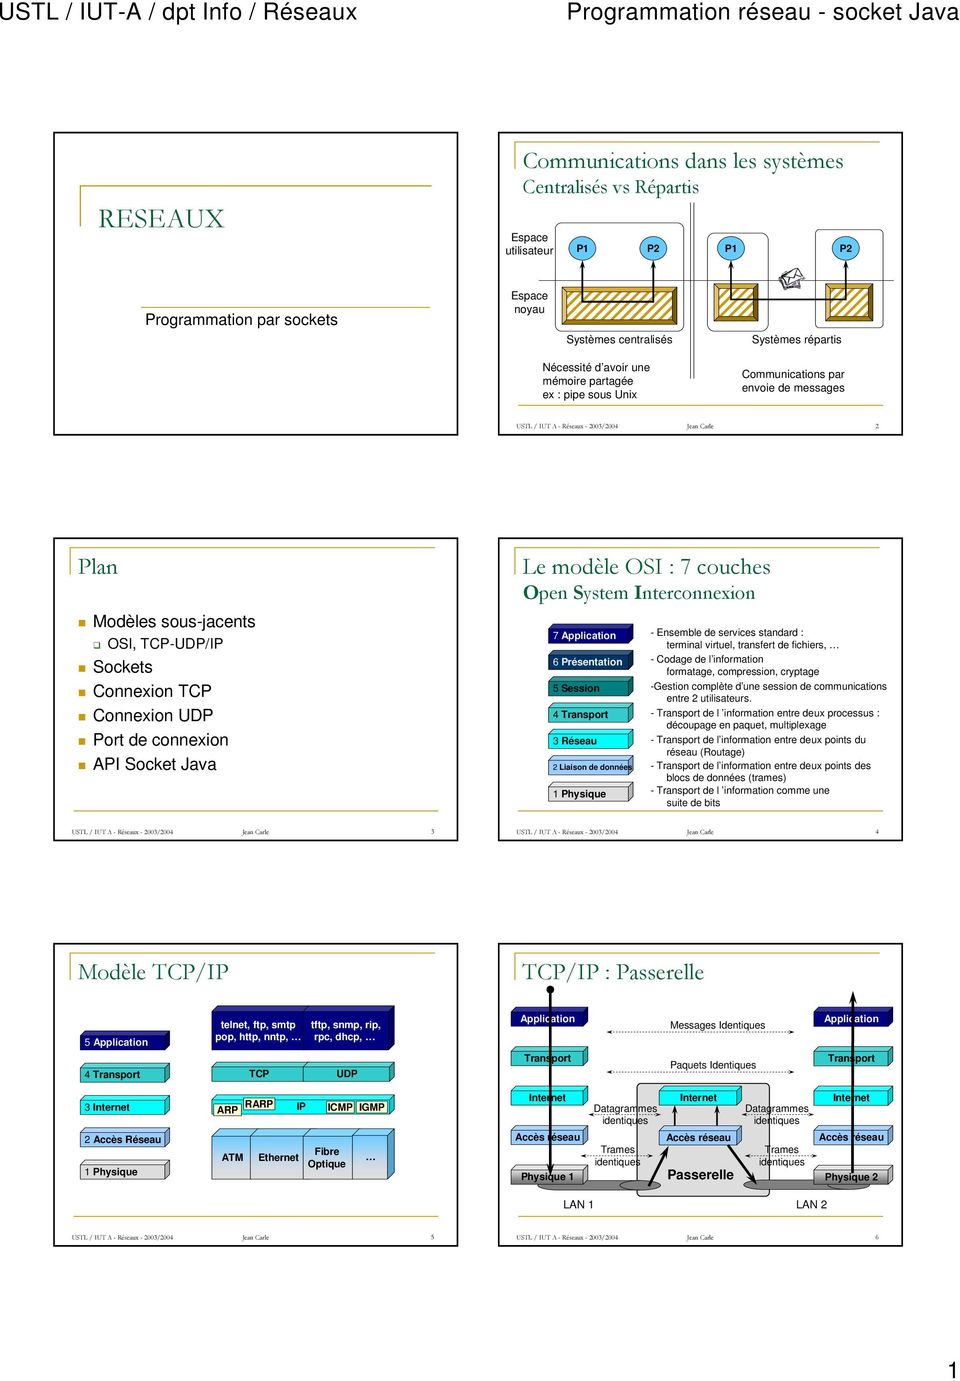 UDP Port de connexion API Socket Java Le modèle OSI : 7 couches Open System Interconnexion 7 Application - Ensemble de services standard : terminal virtuel, transfert de fichiers, 6 Présentation -